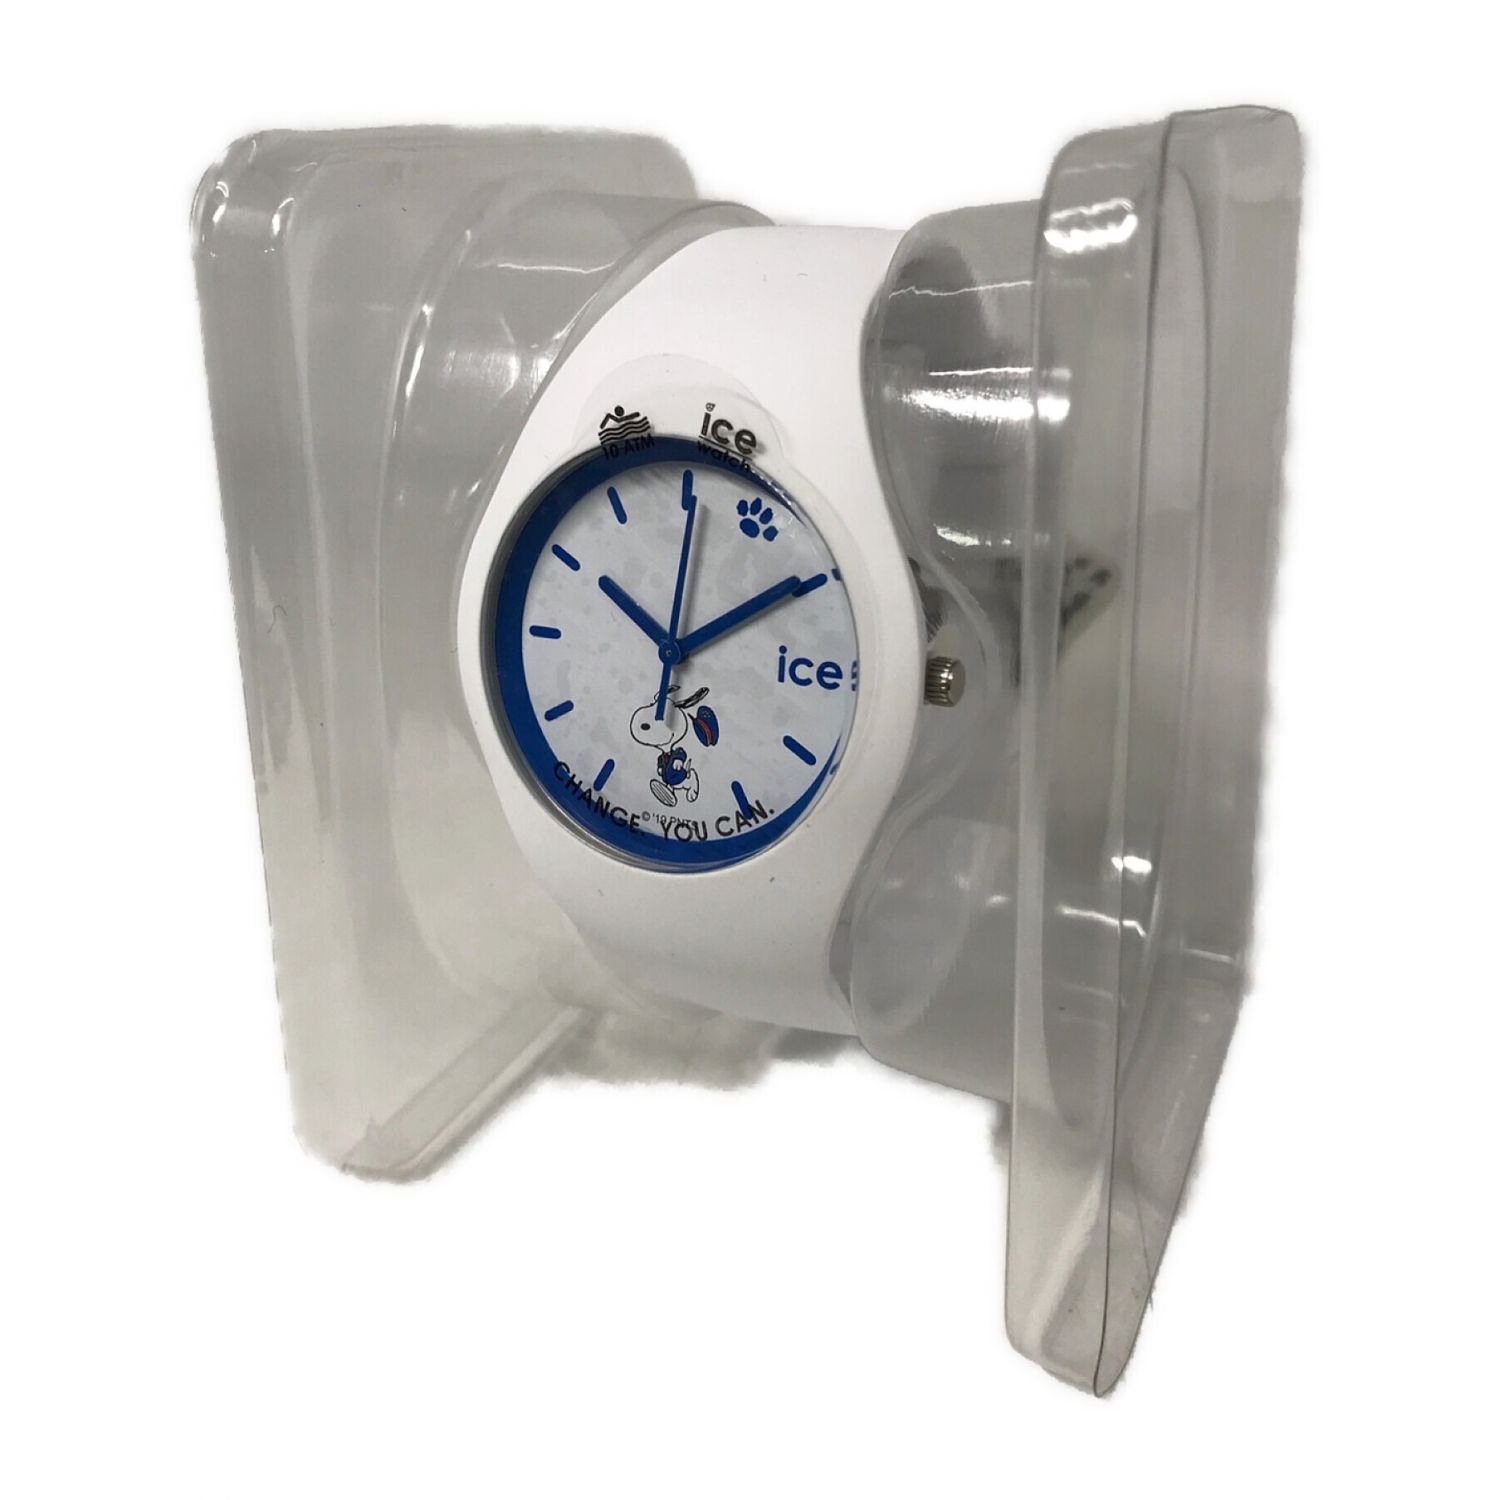 ice watch×SNOOPY リストウォッチ 銀座三越SNOOPYコラボ2019限定モデル 